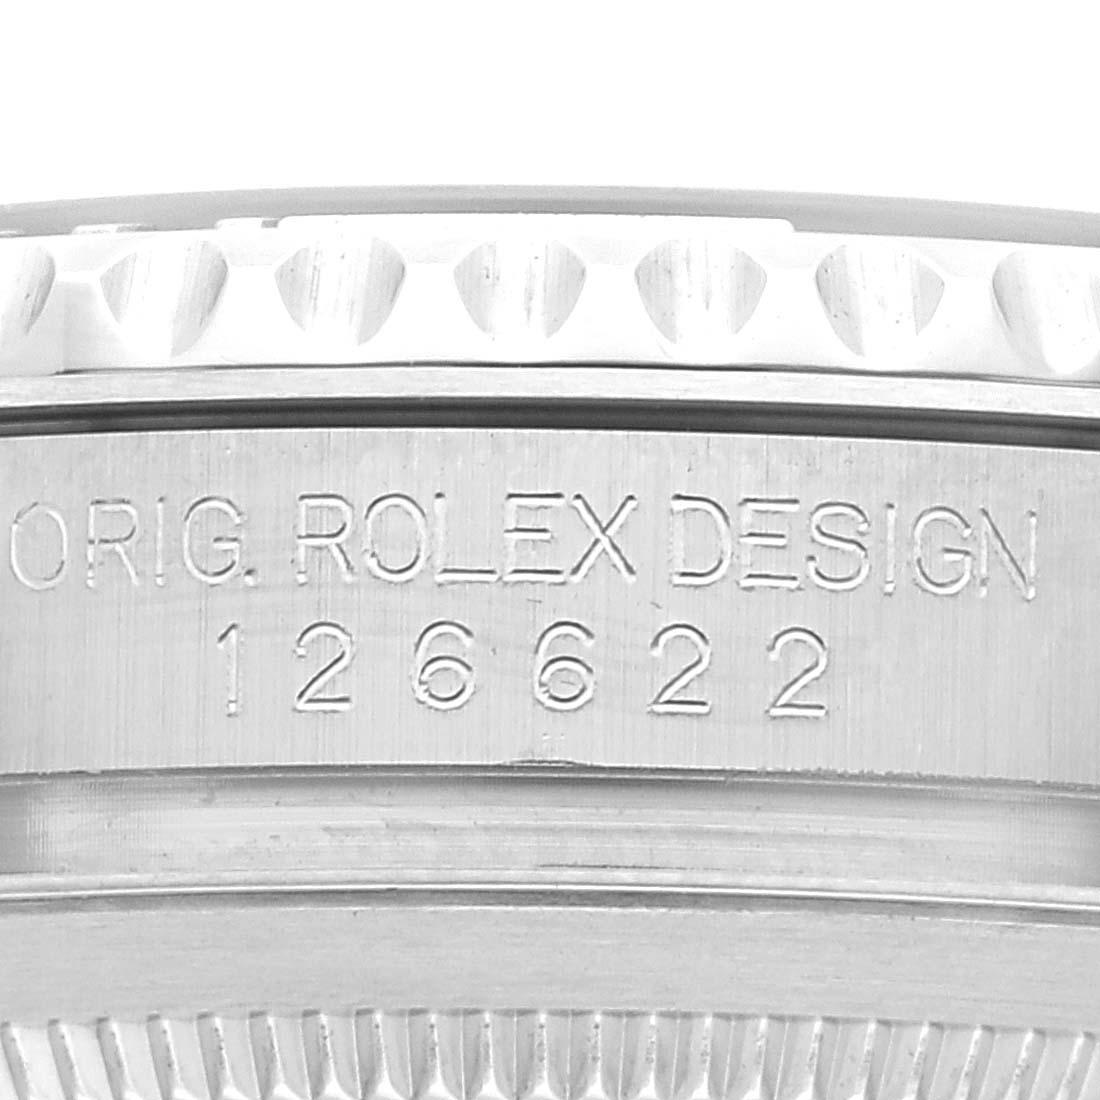 Rolex Yachtmaster Steel Platinum Bezel Rhodium Dial Mens Watch 126622 Box Card. Mouvement automatique à remontage automatique, officiellement certifié chronomètre. Boîtier en acier inoxydable de 40.0 mm de diamètre. Logo Rolex sur la couronne.